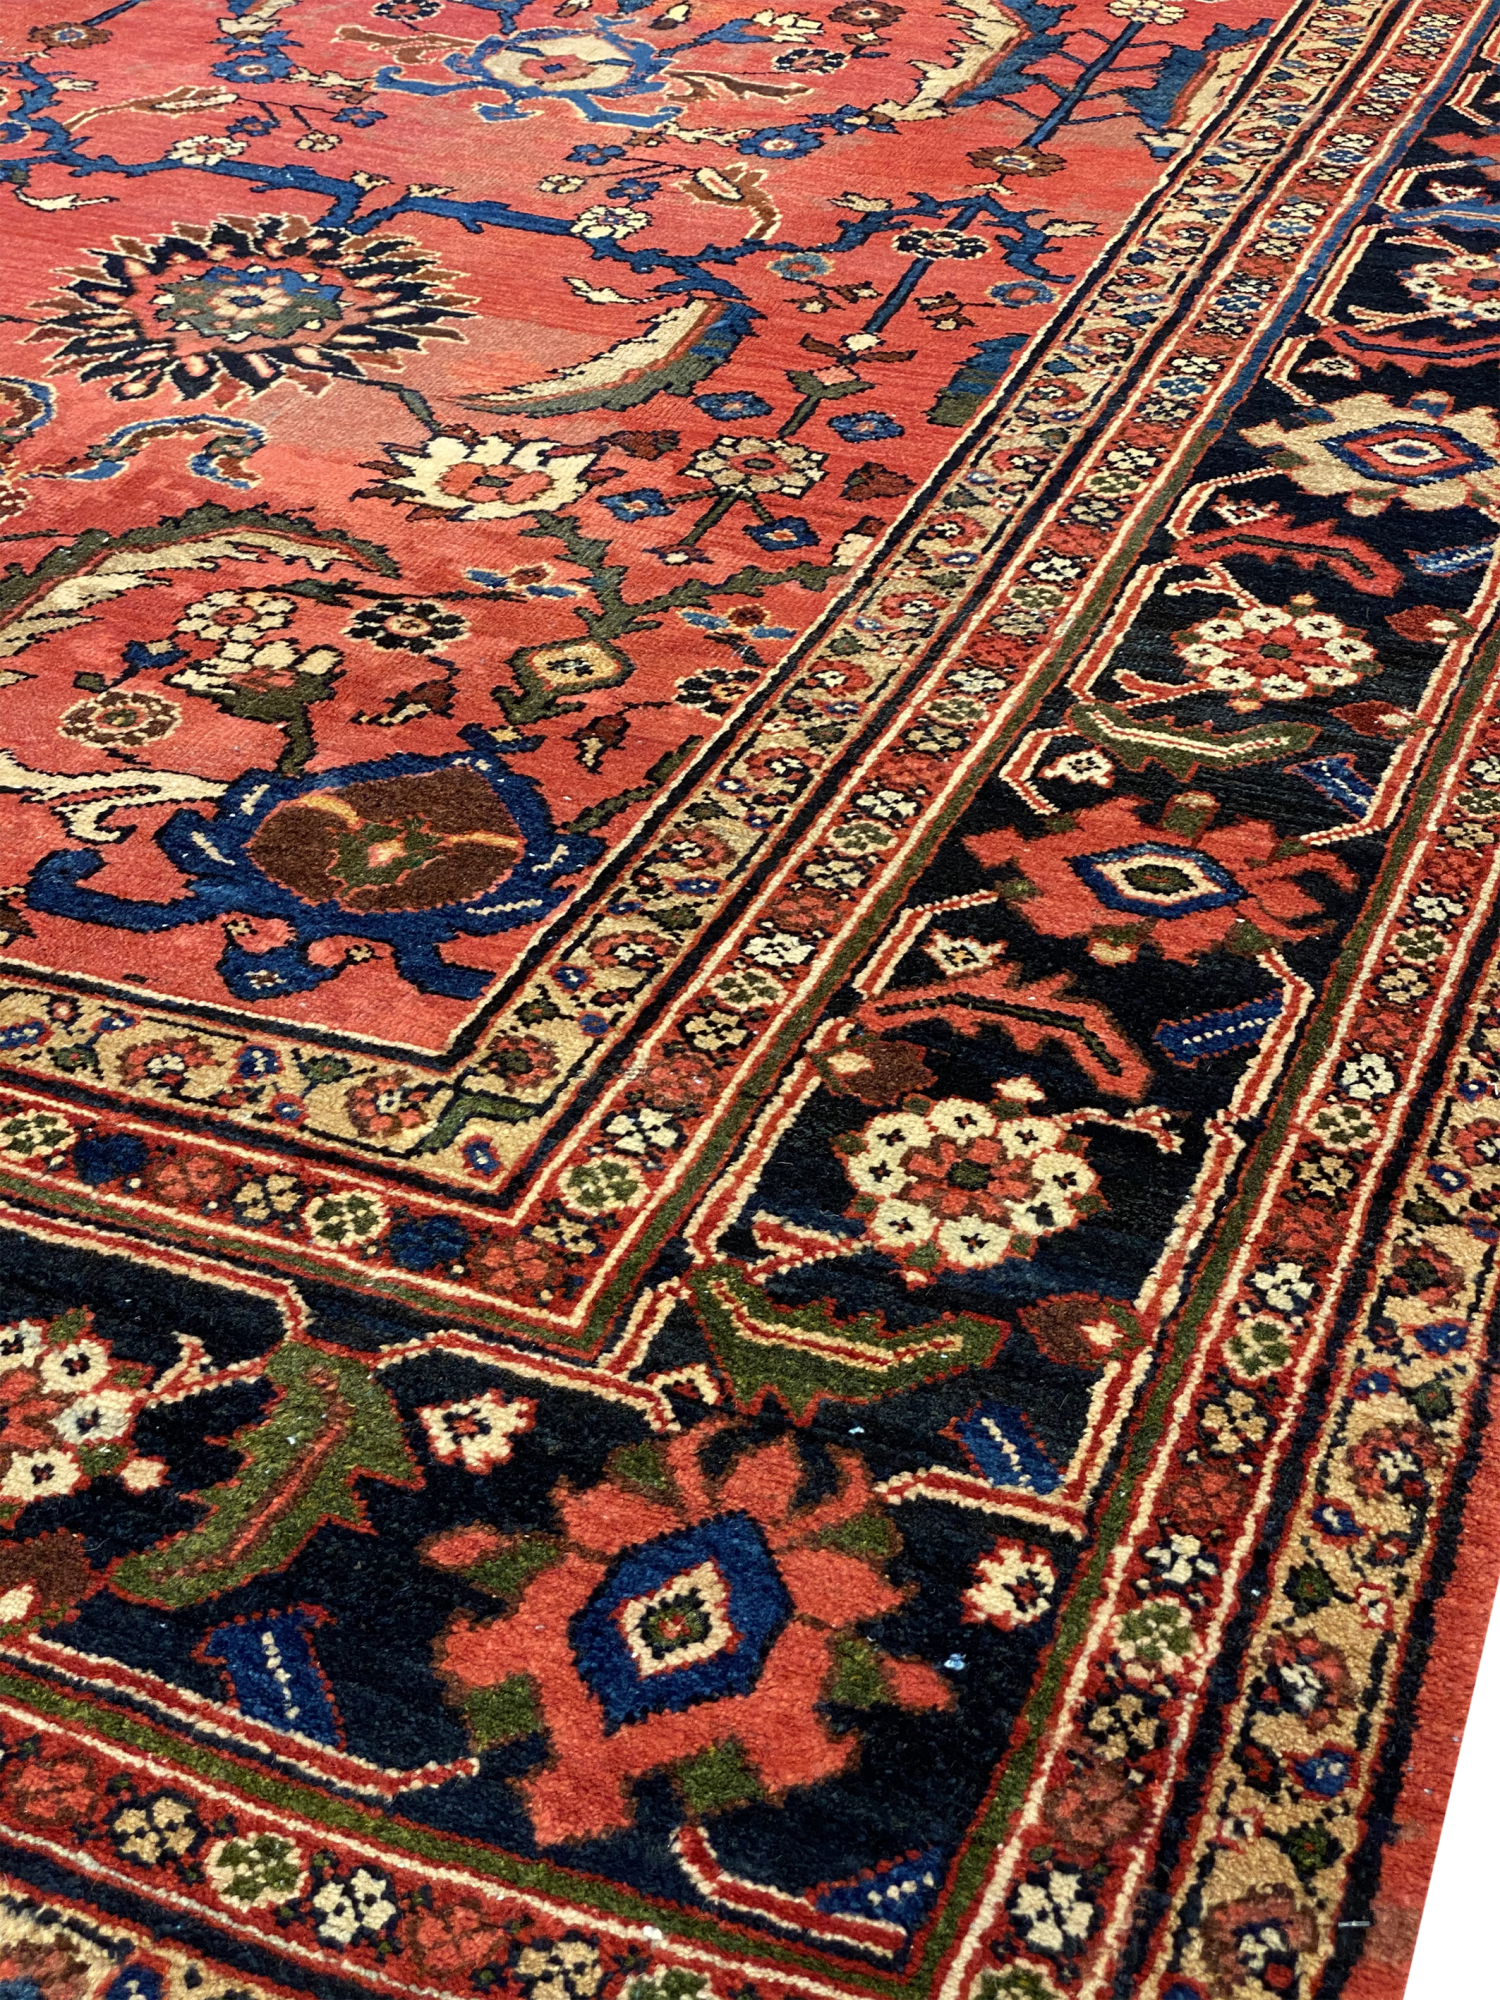 Antique Persian Mahal 9' 8" x 13' 1" Handmade Area Rug - Shabahang Royal Carpet